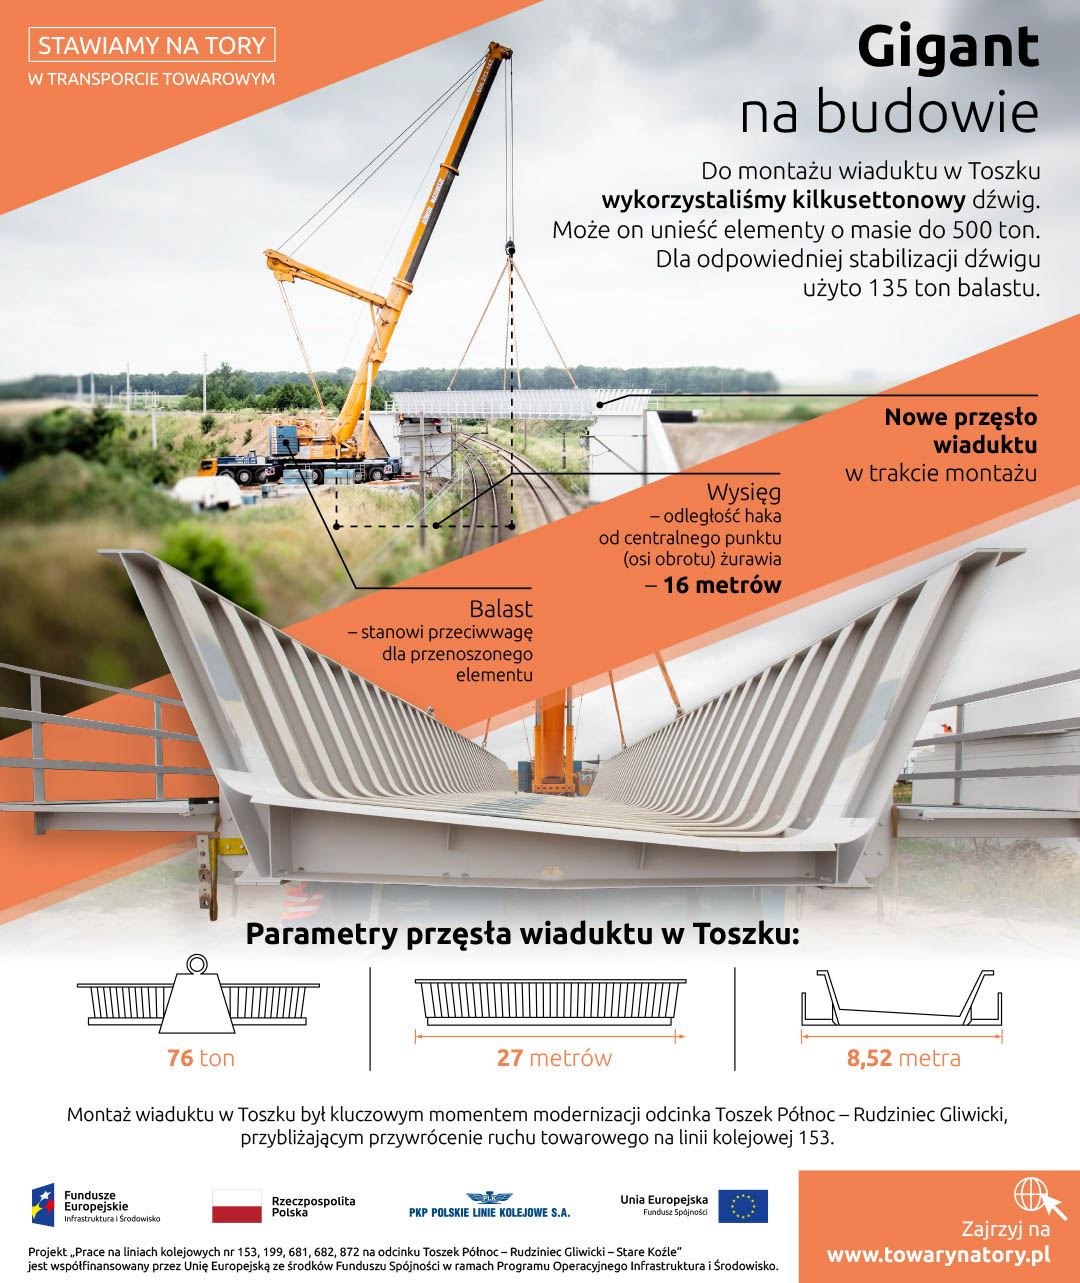 Infografika dotycząca gigantycznego dźwigu na budowie wiaduktu w Toszku. Dźwig ten może unieść 500 ton, do stabilizacji użyto 135 ton balastu. Wiadukt który podnosił ważył 76 ton i mierzył 27 metrów.